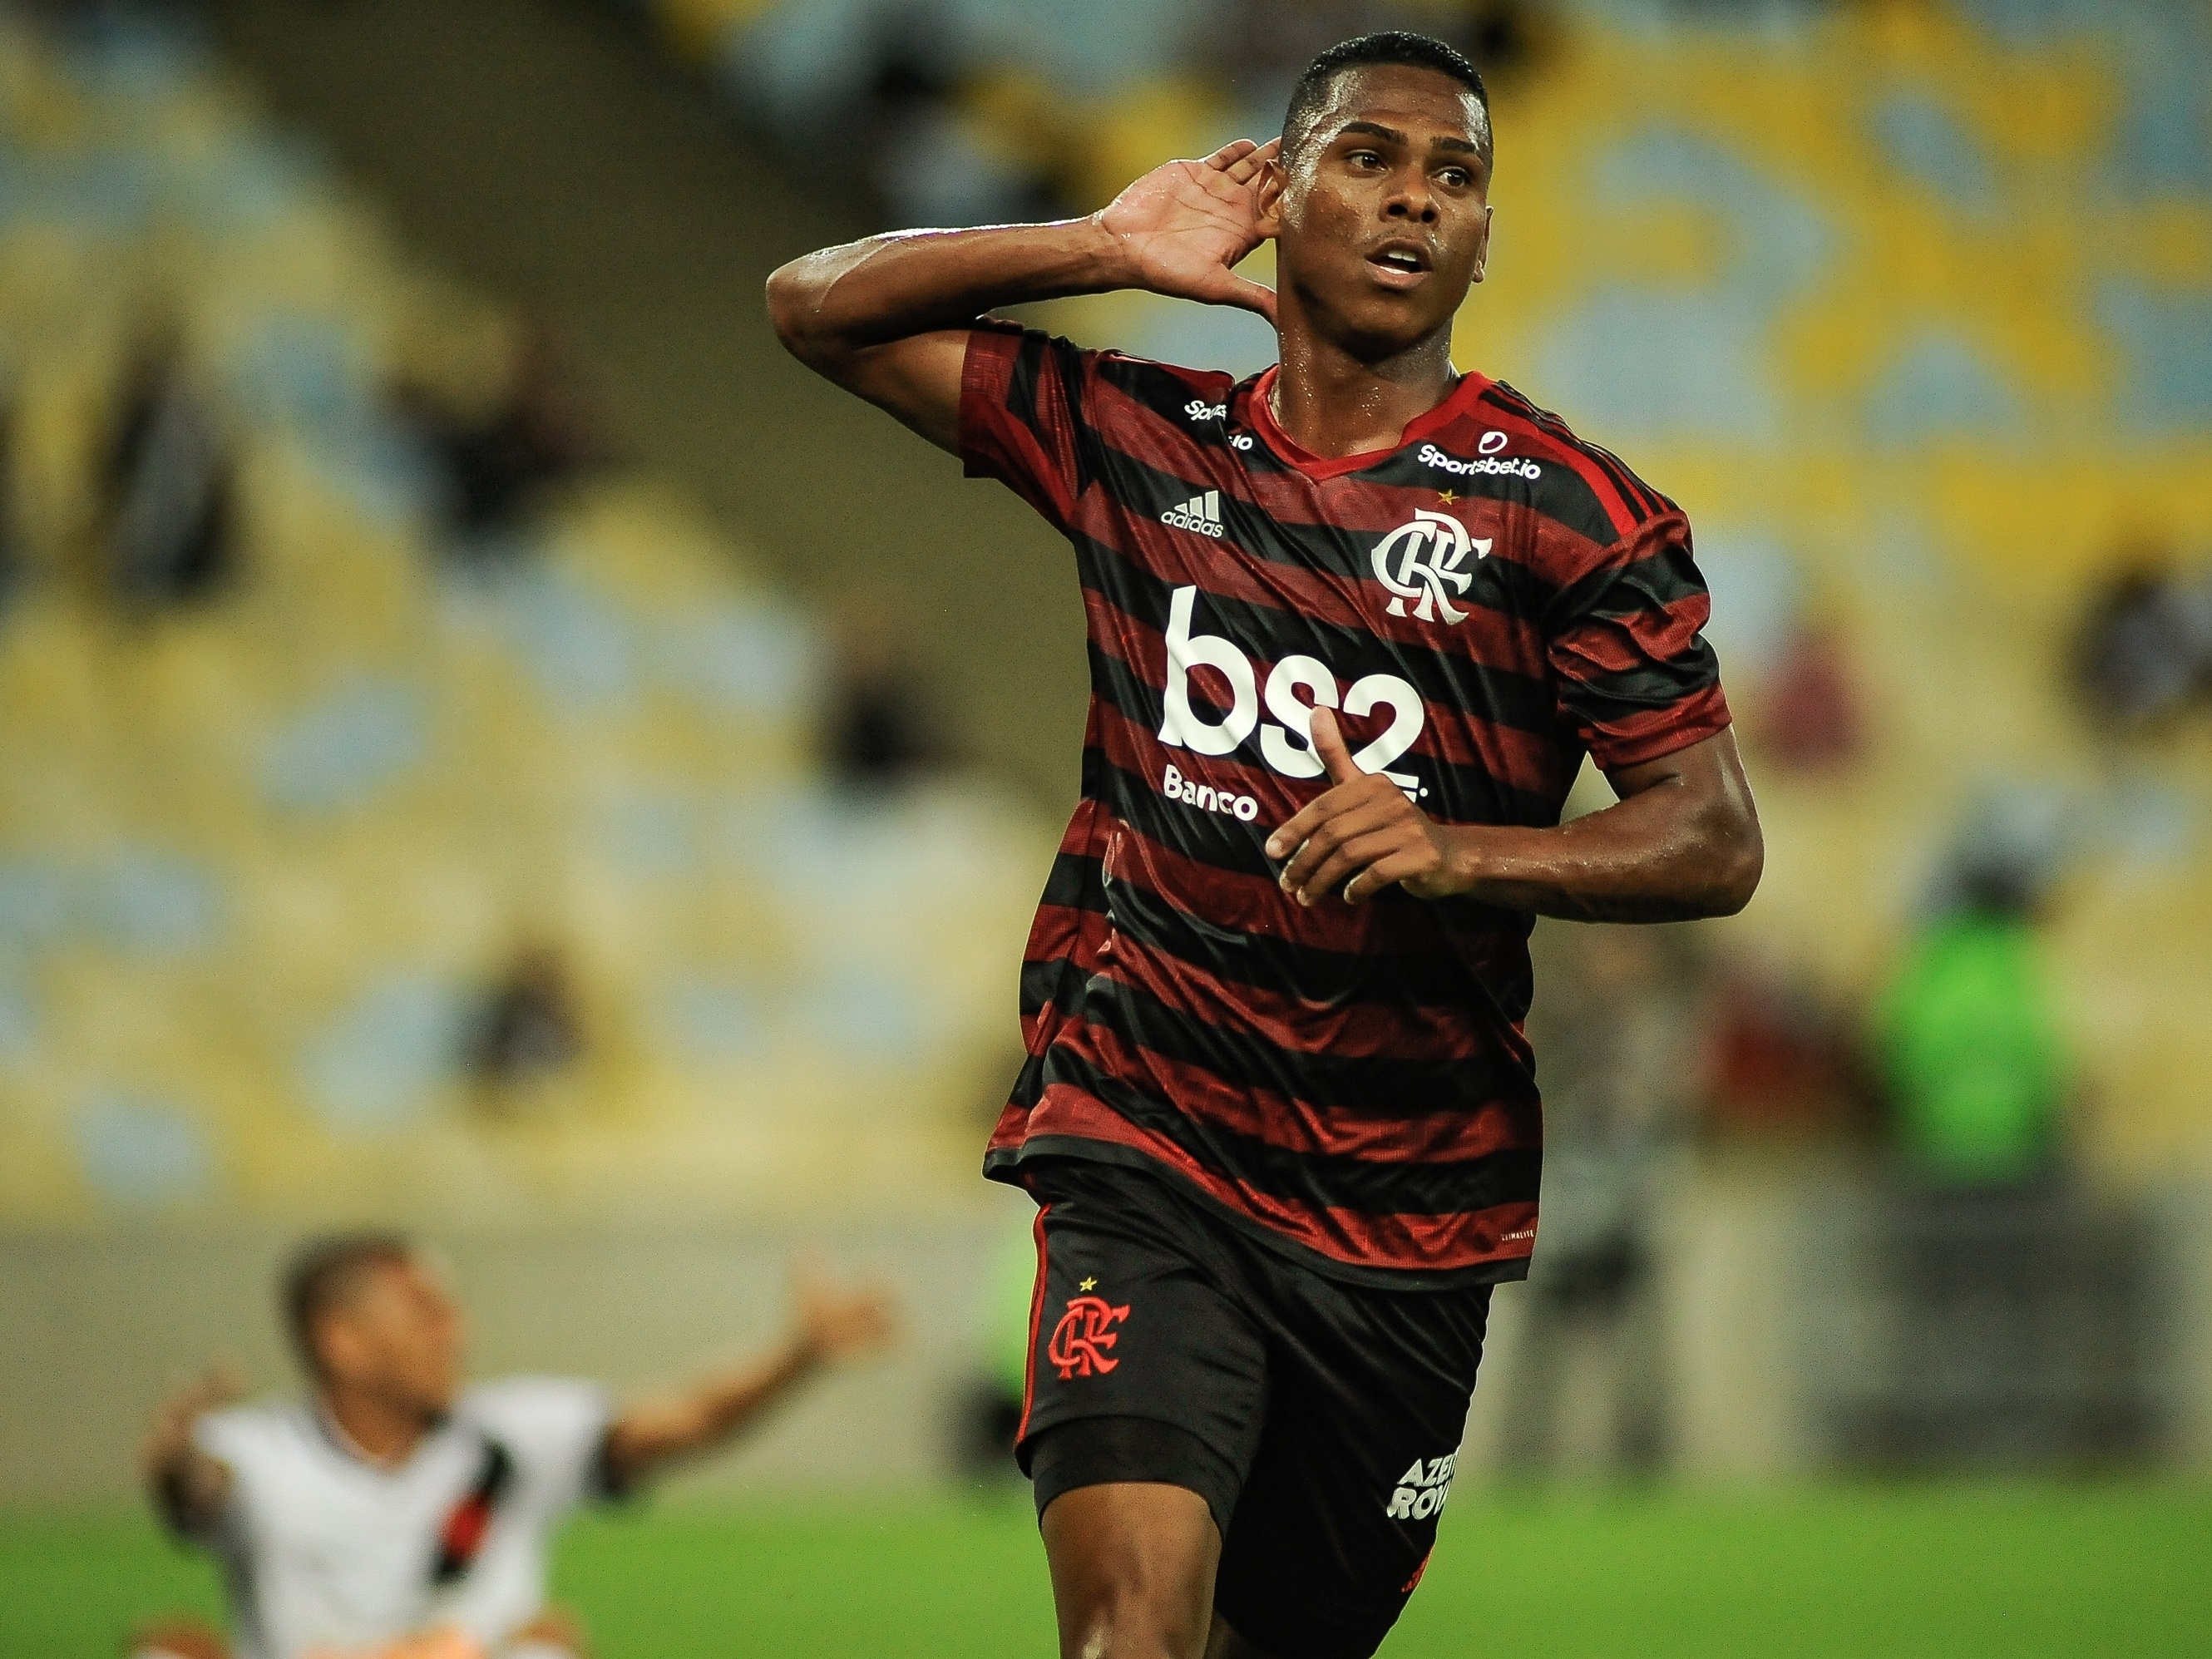 Flamengo volta atrás e vai transmitir jogo pela Fla TV